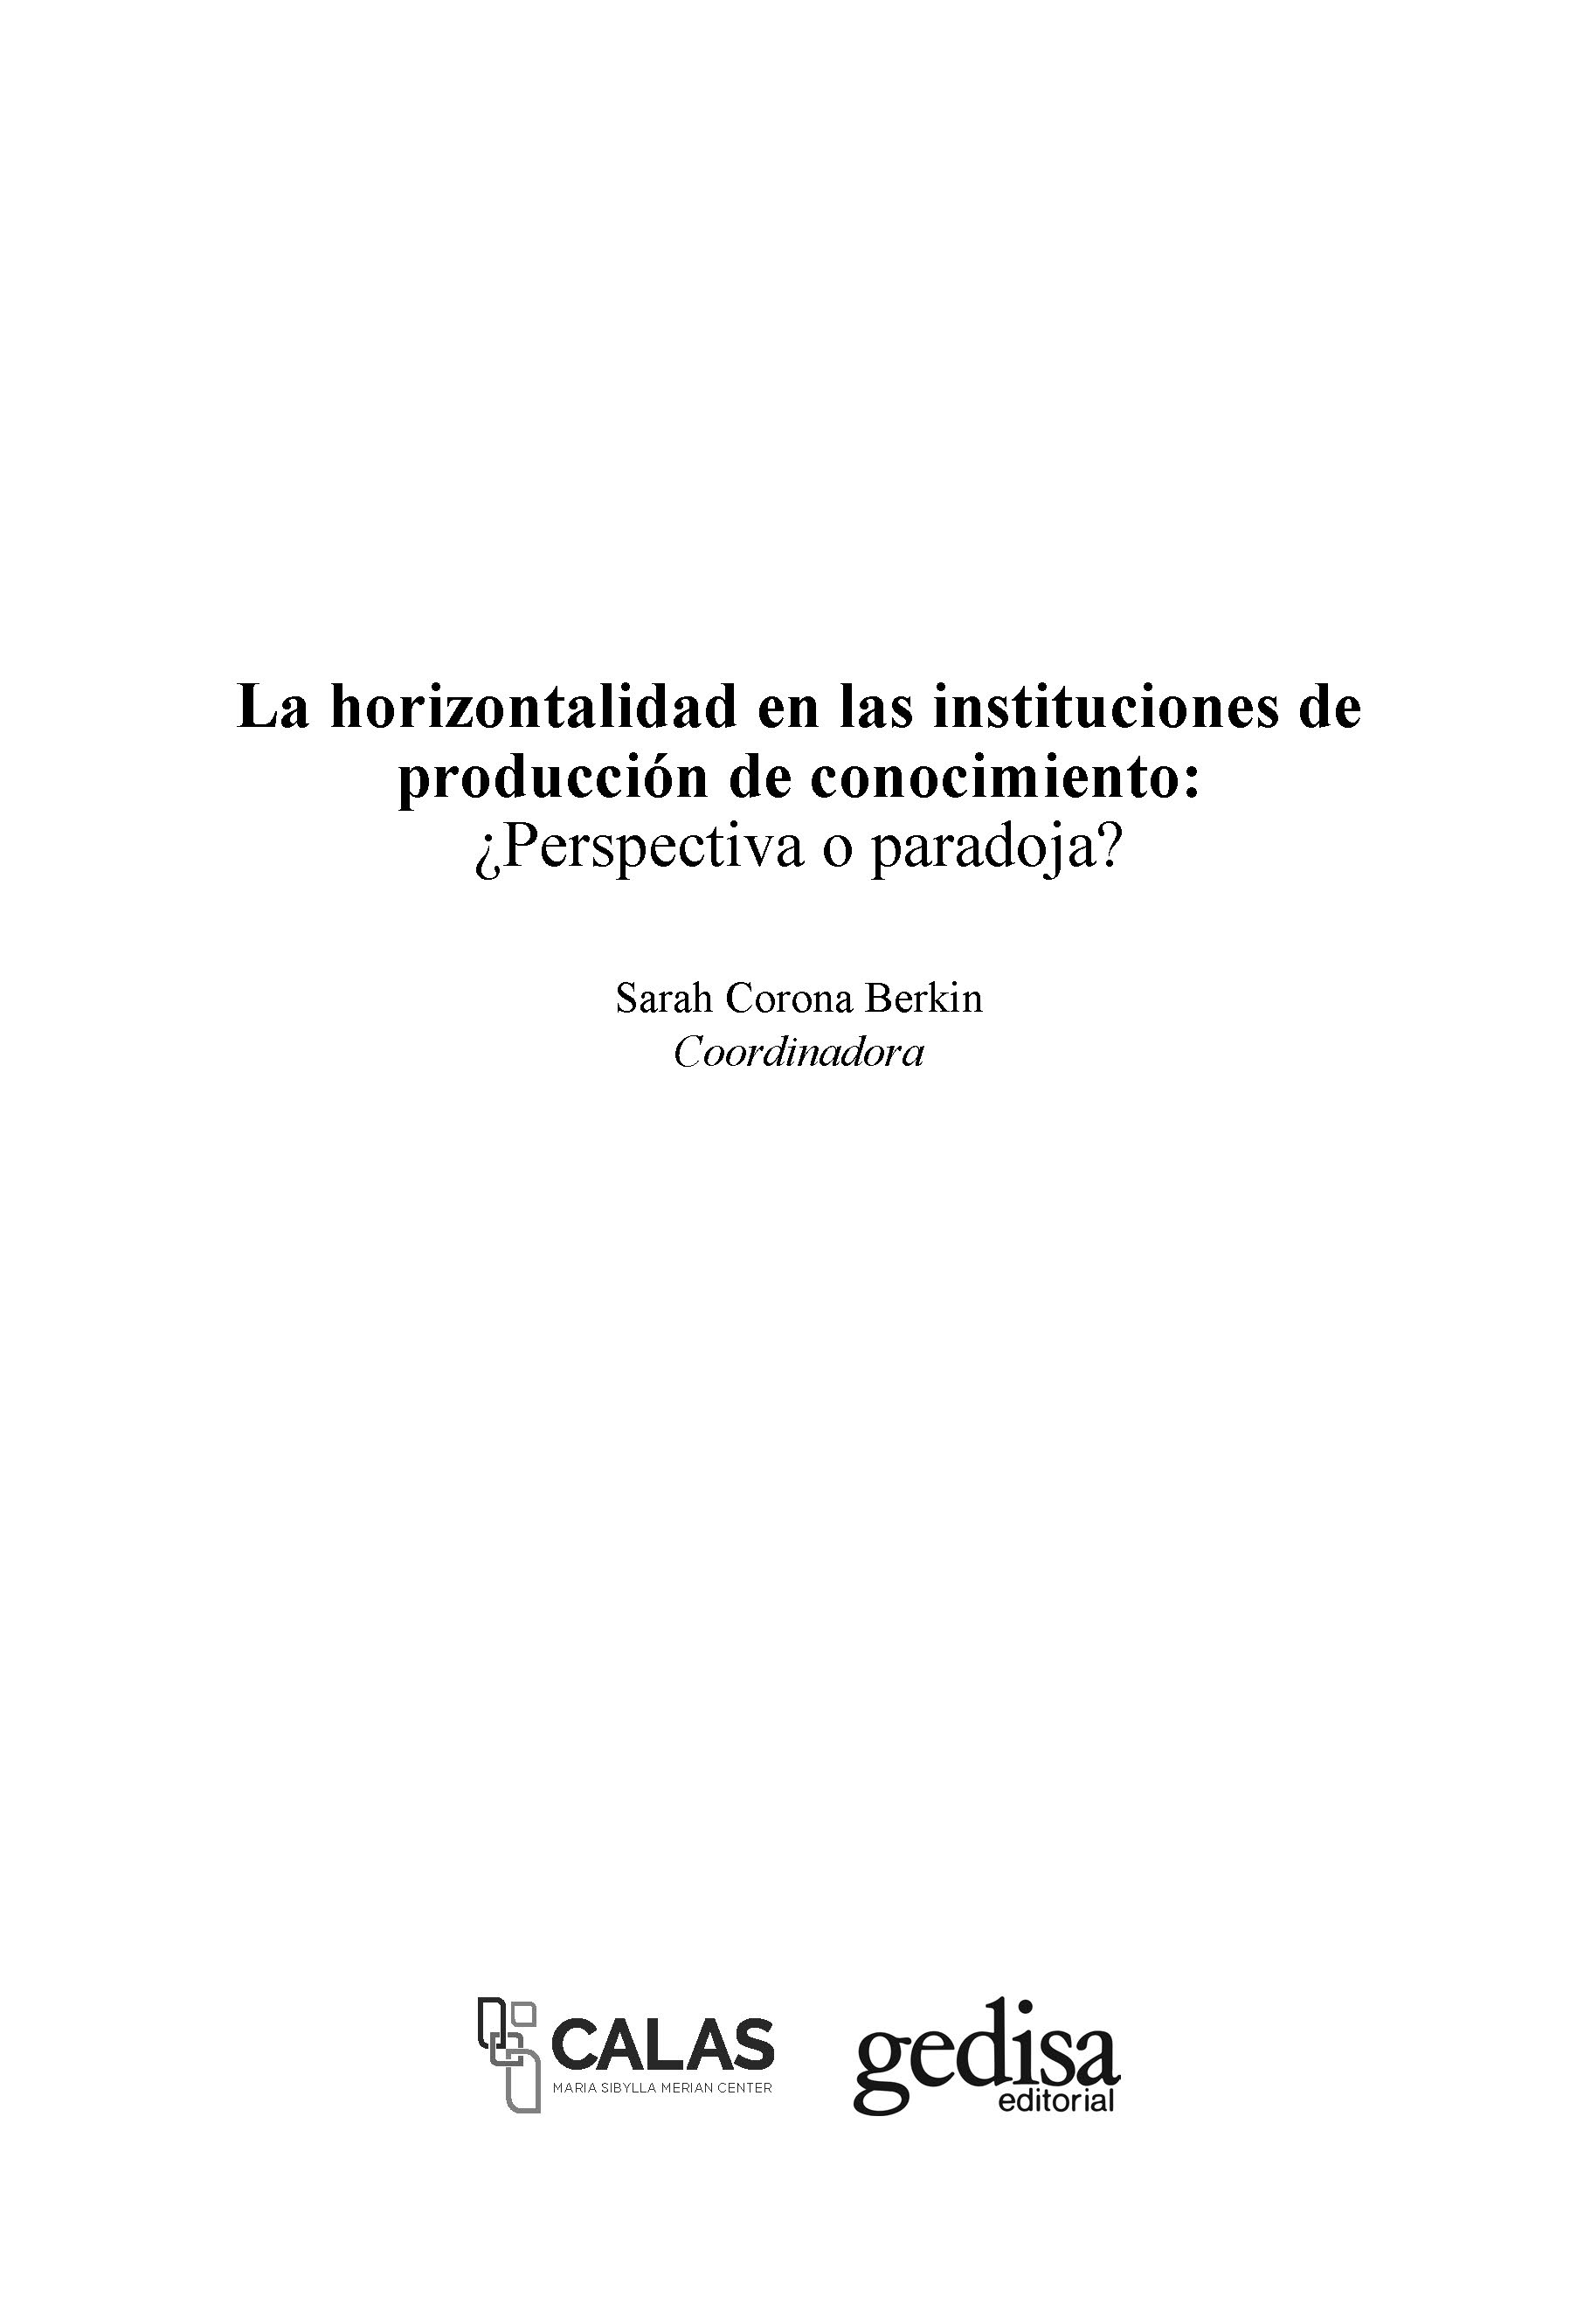 La horizontalidad en las instituciones de producción de conocimiento - photo 3